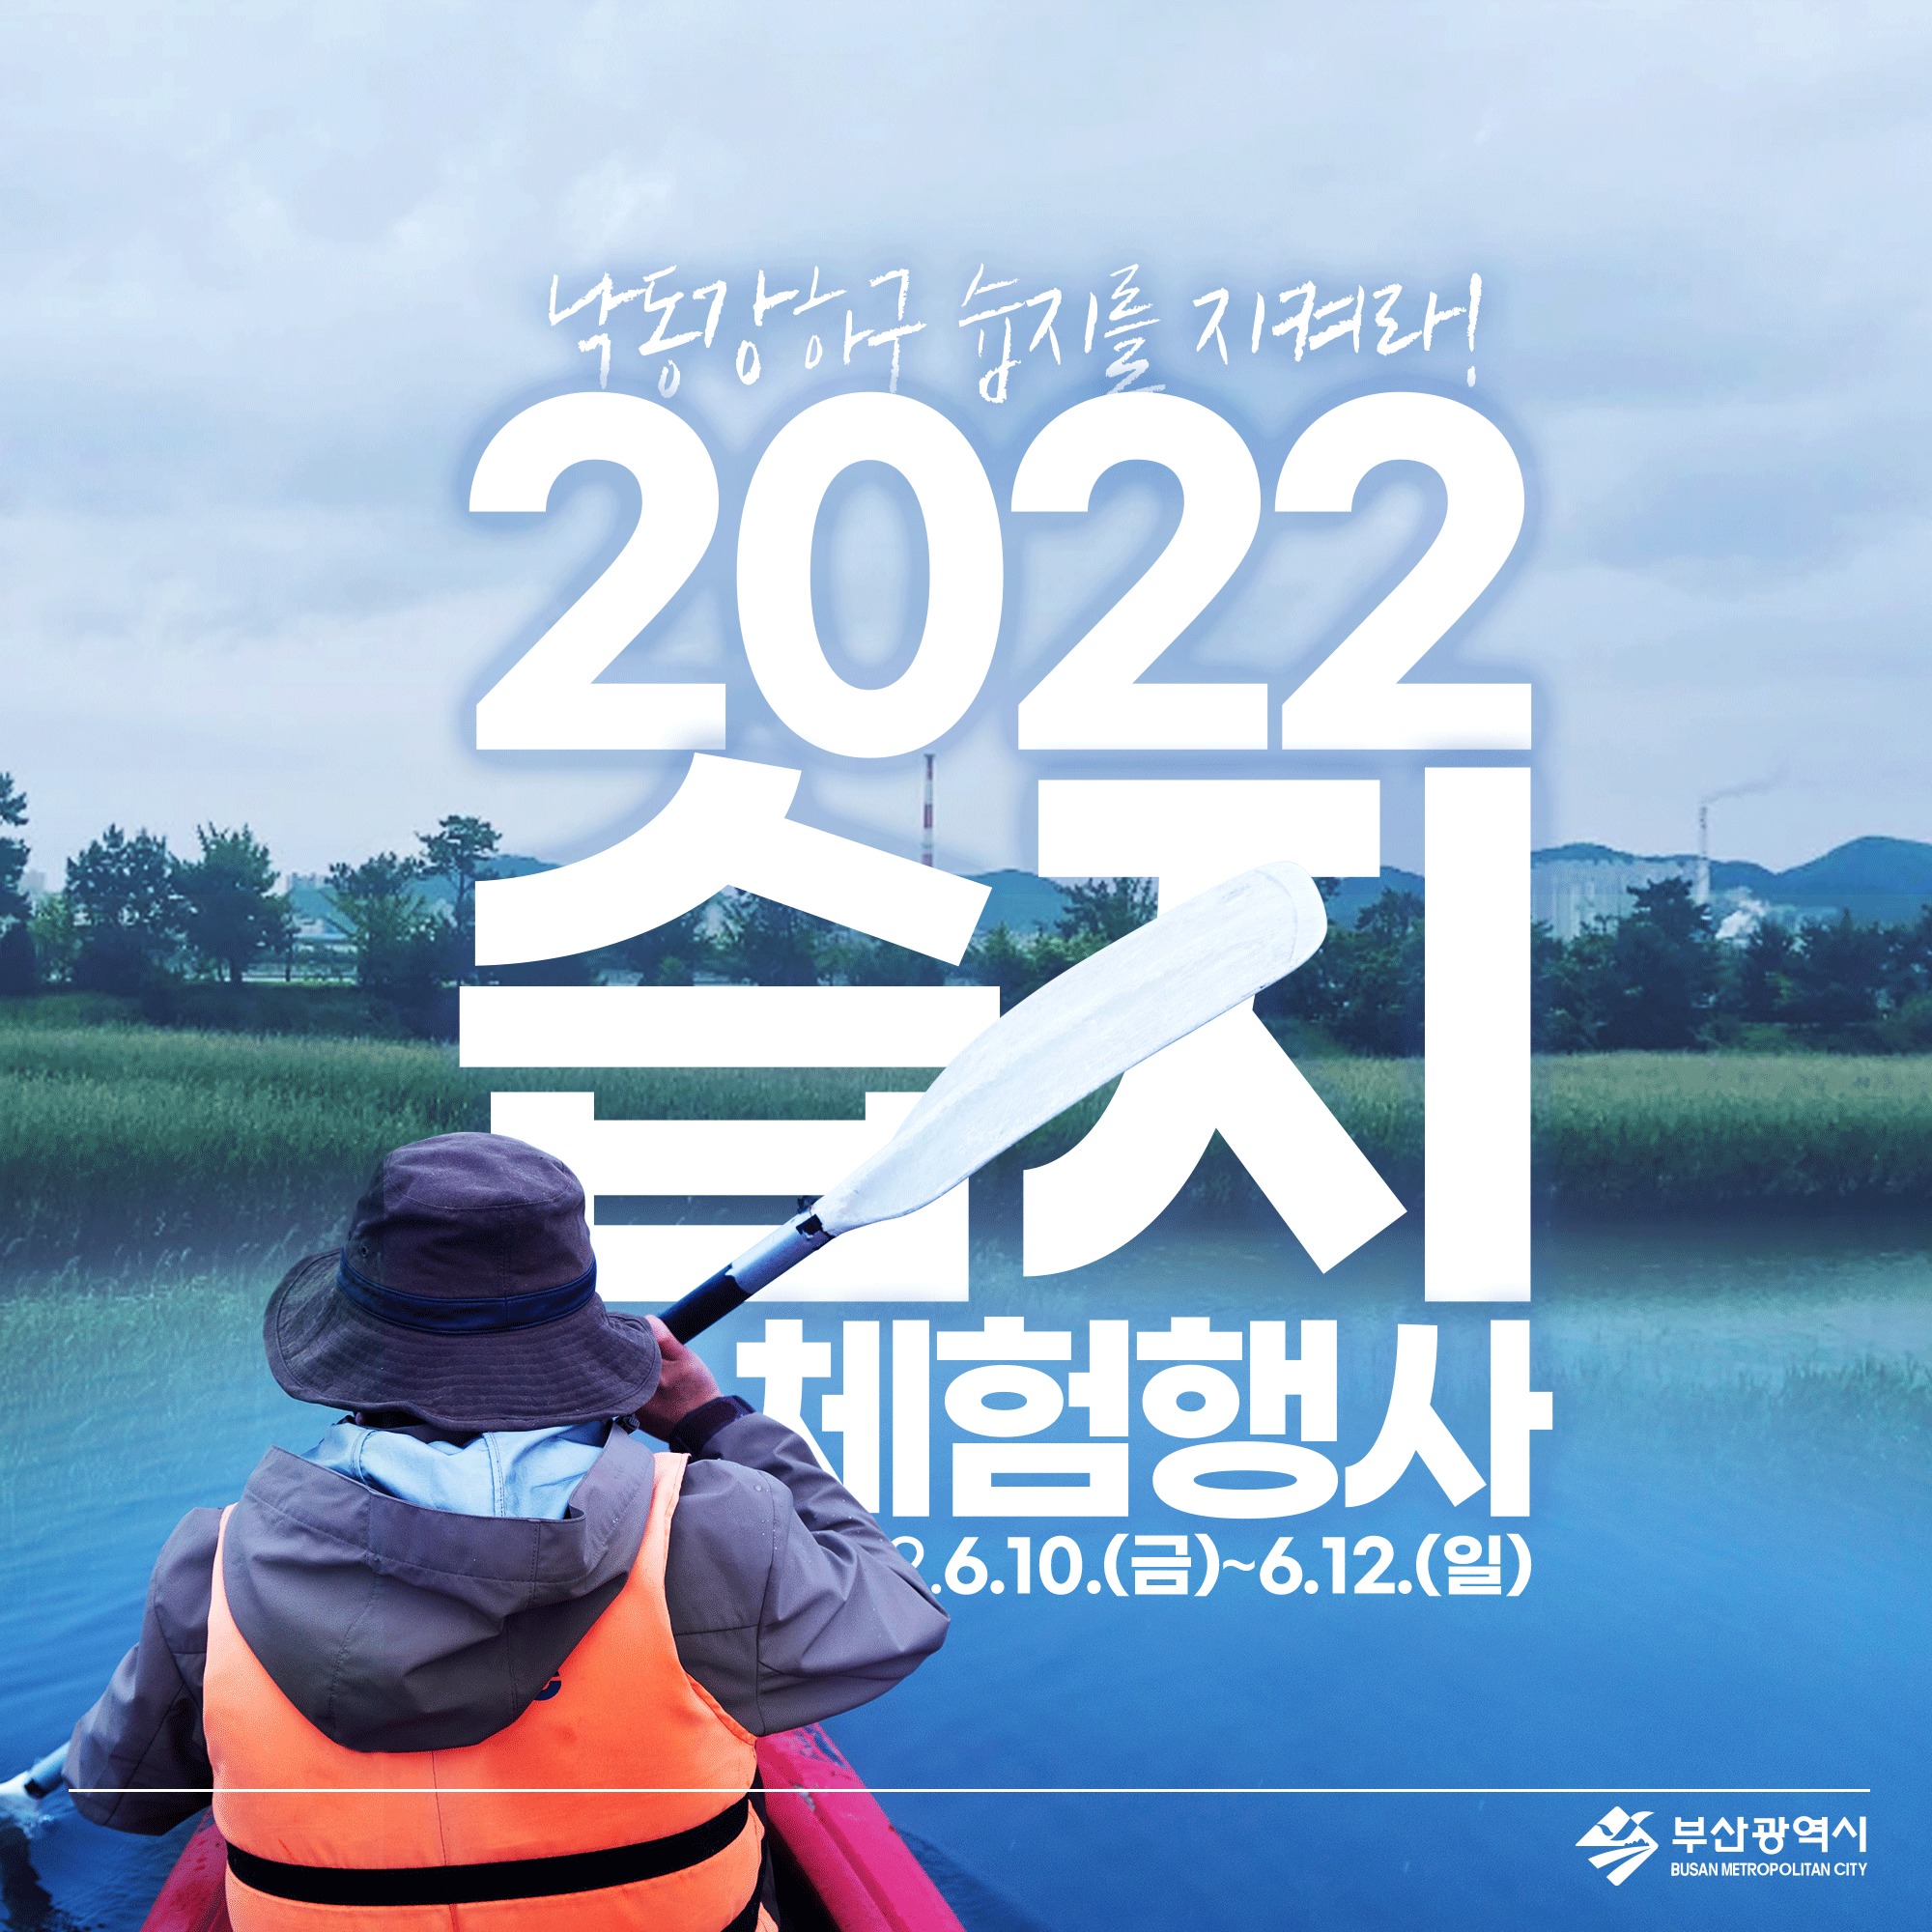 낙동강하구 습지를 지켜라! 2022년 습지체험 행사 2022.6.10.(금)~6.12.(일) 부산광역시